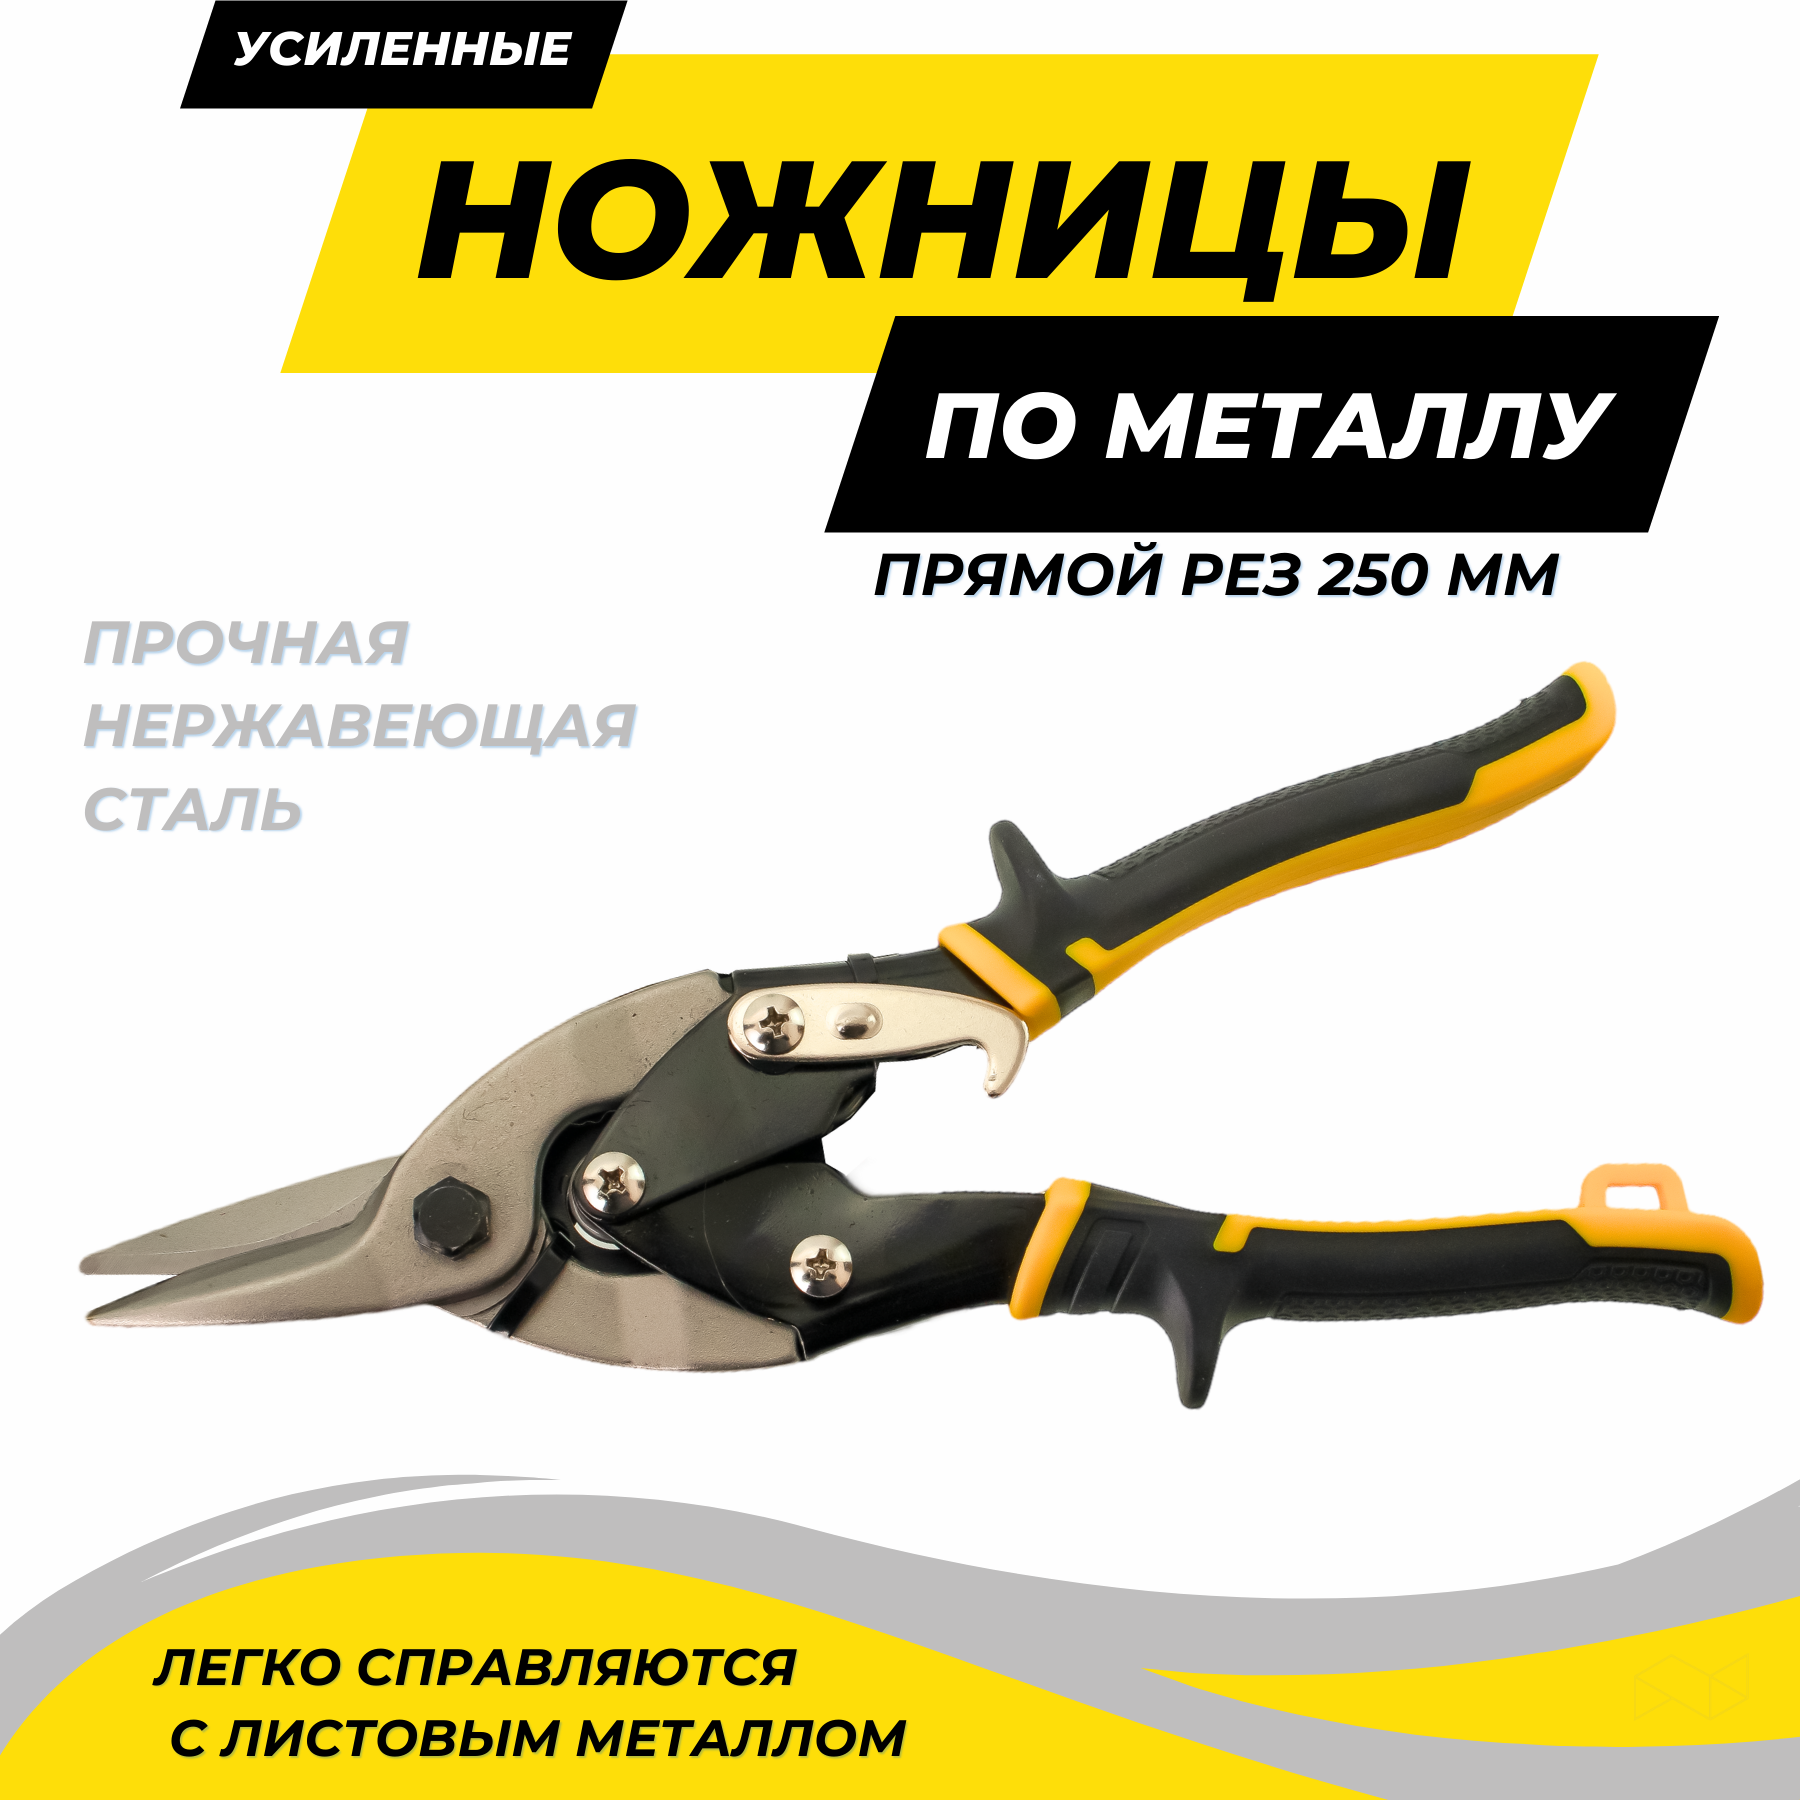 Ножницы по металлу усиленные прямой рез 250 мм ножницы freund l300 пеликаны 01232300 усиленные правые